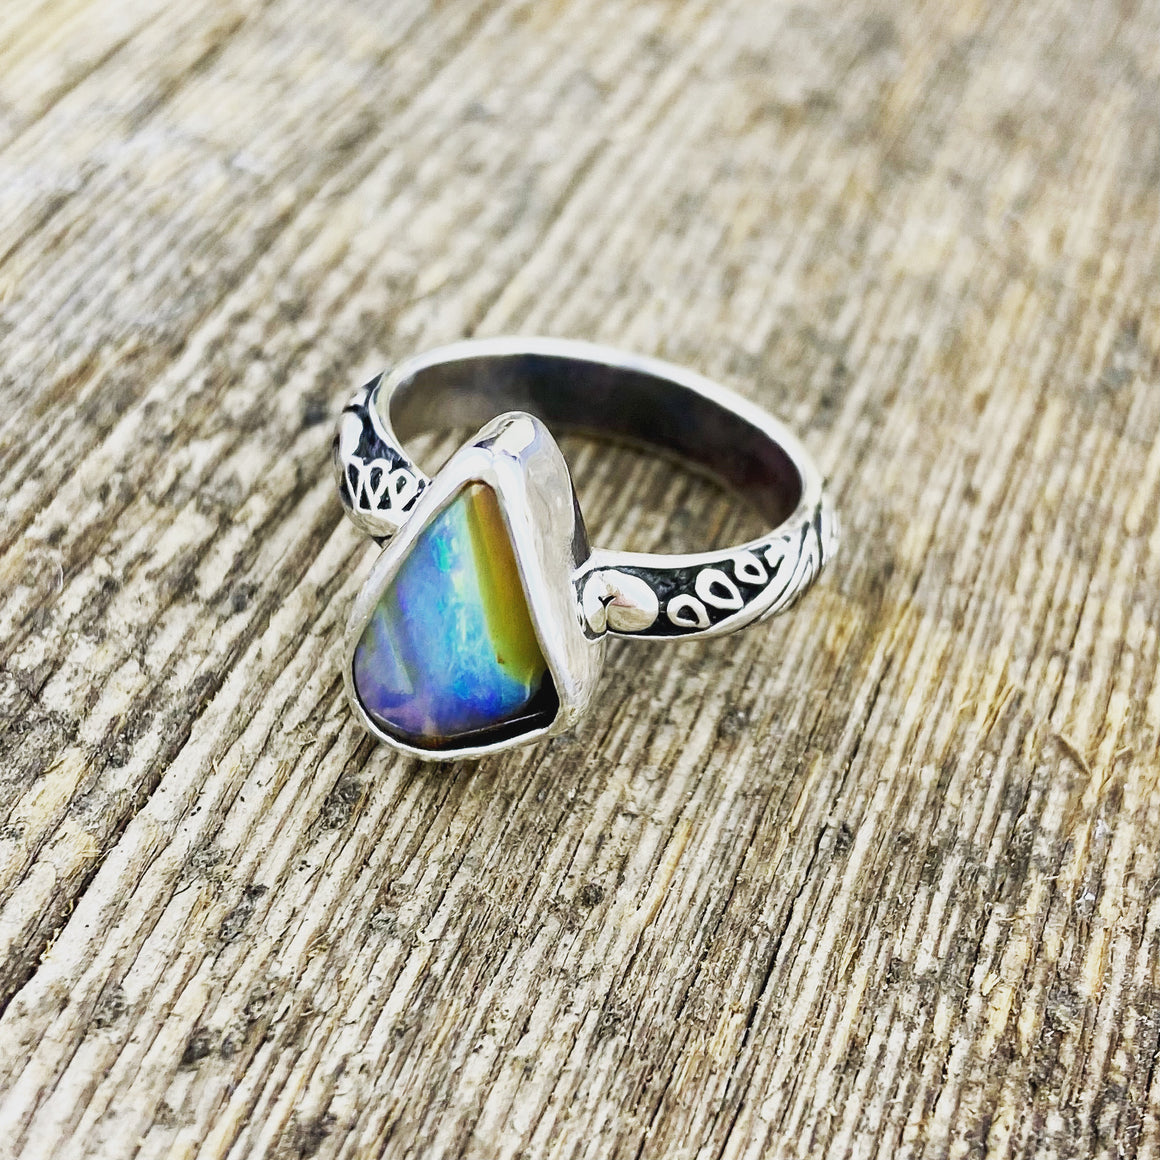 Unique Boulder Opal lace Ring